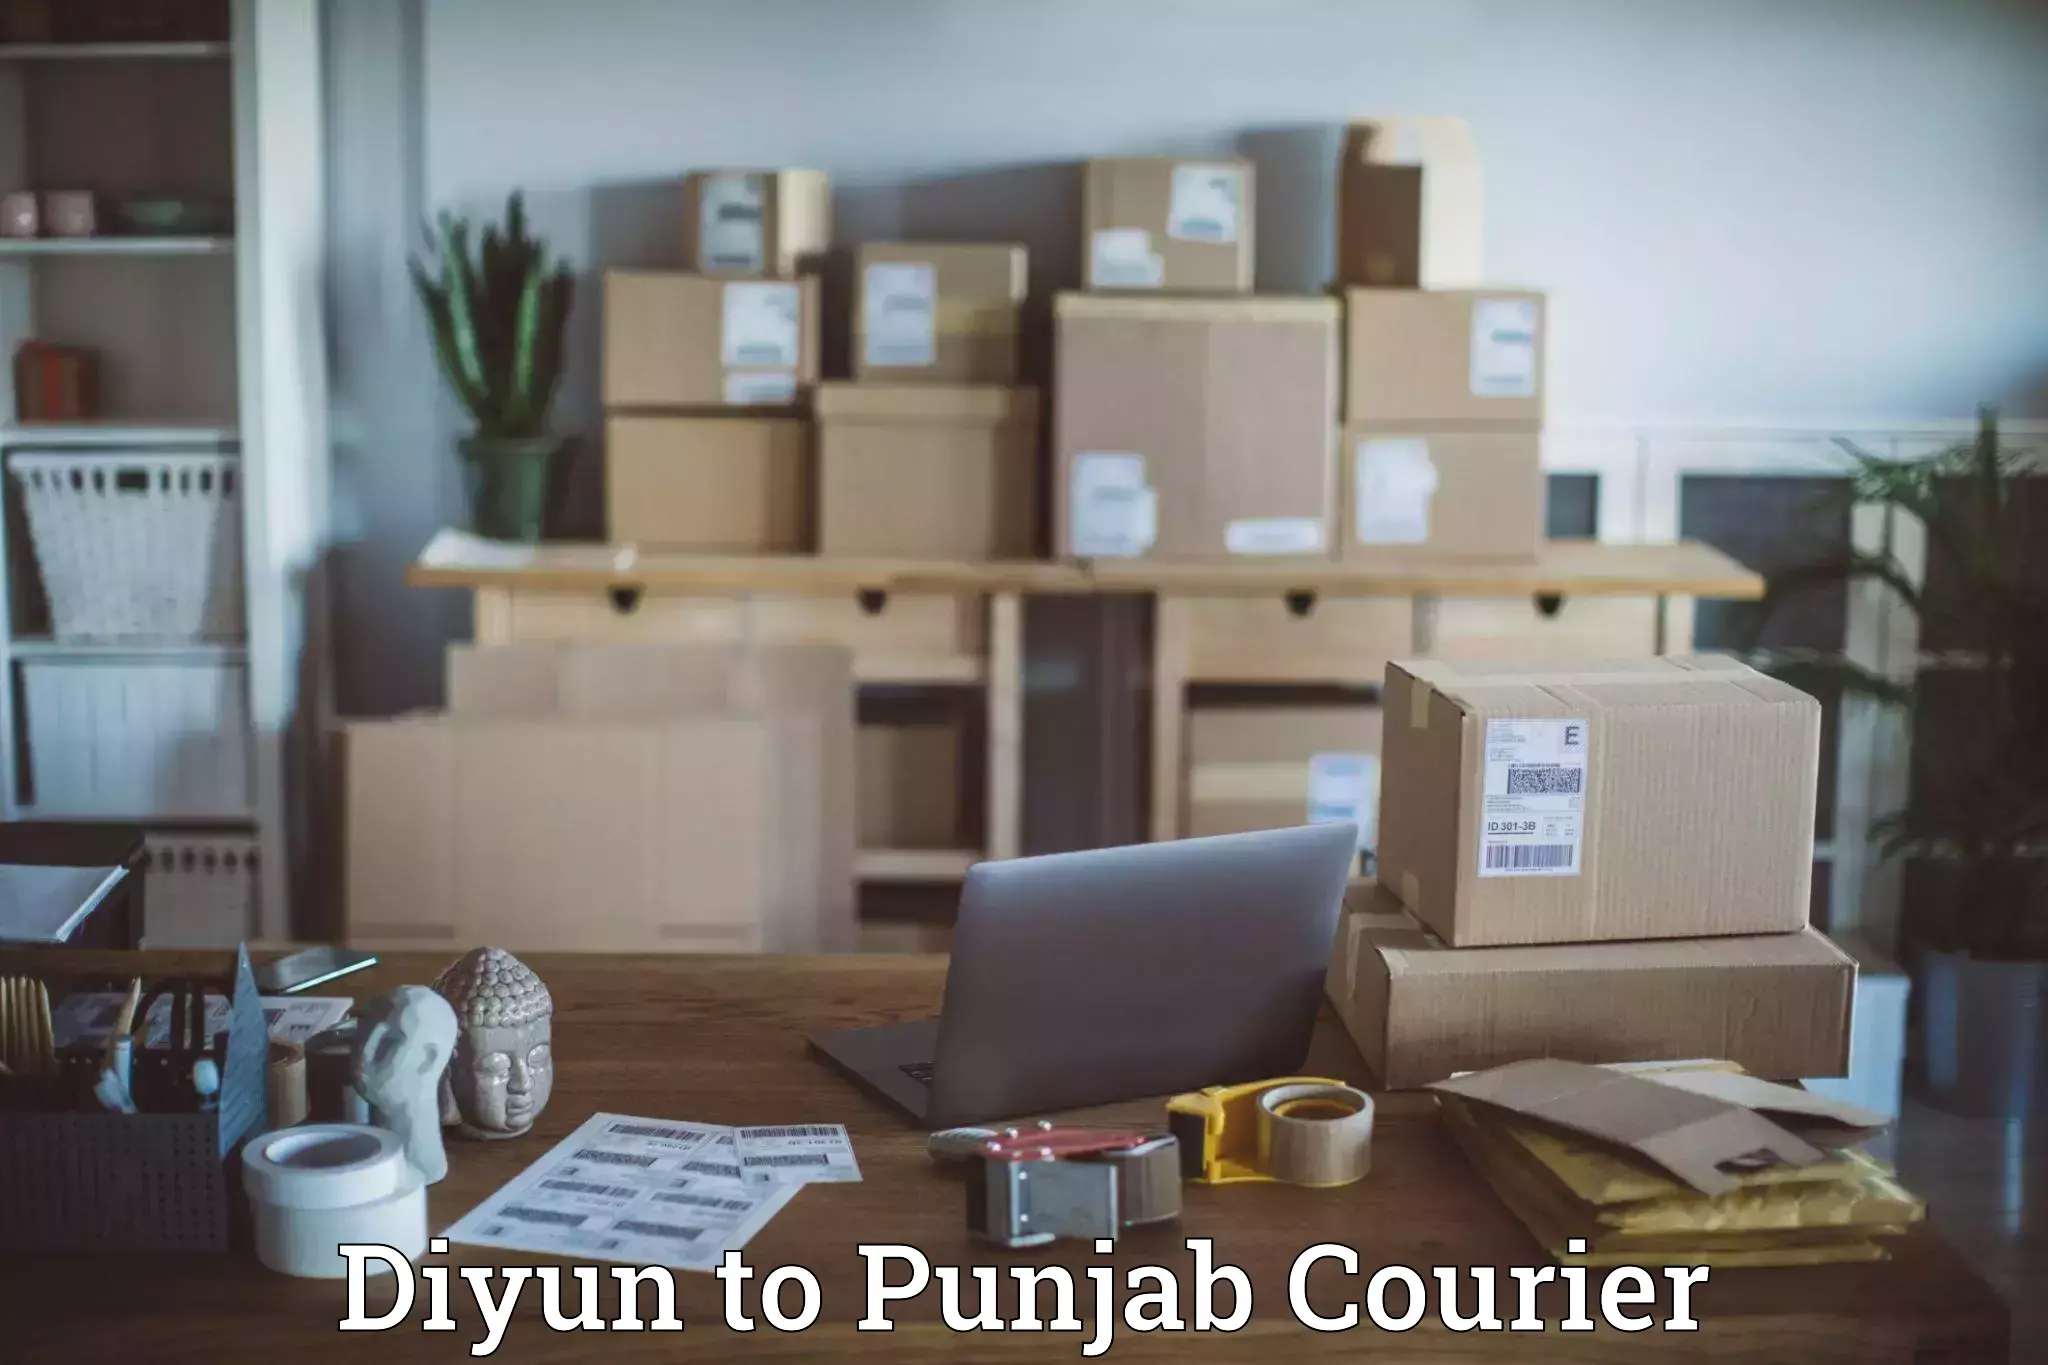 On-call courier service Diyun to Punjab